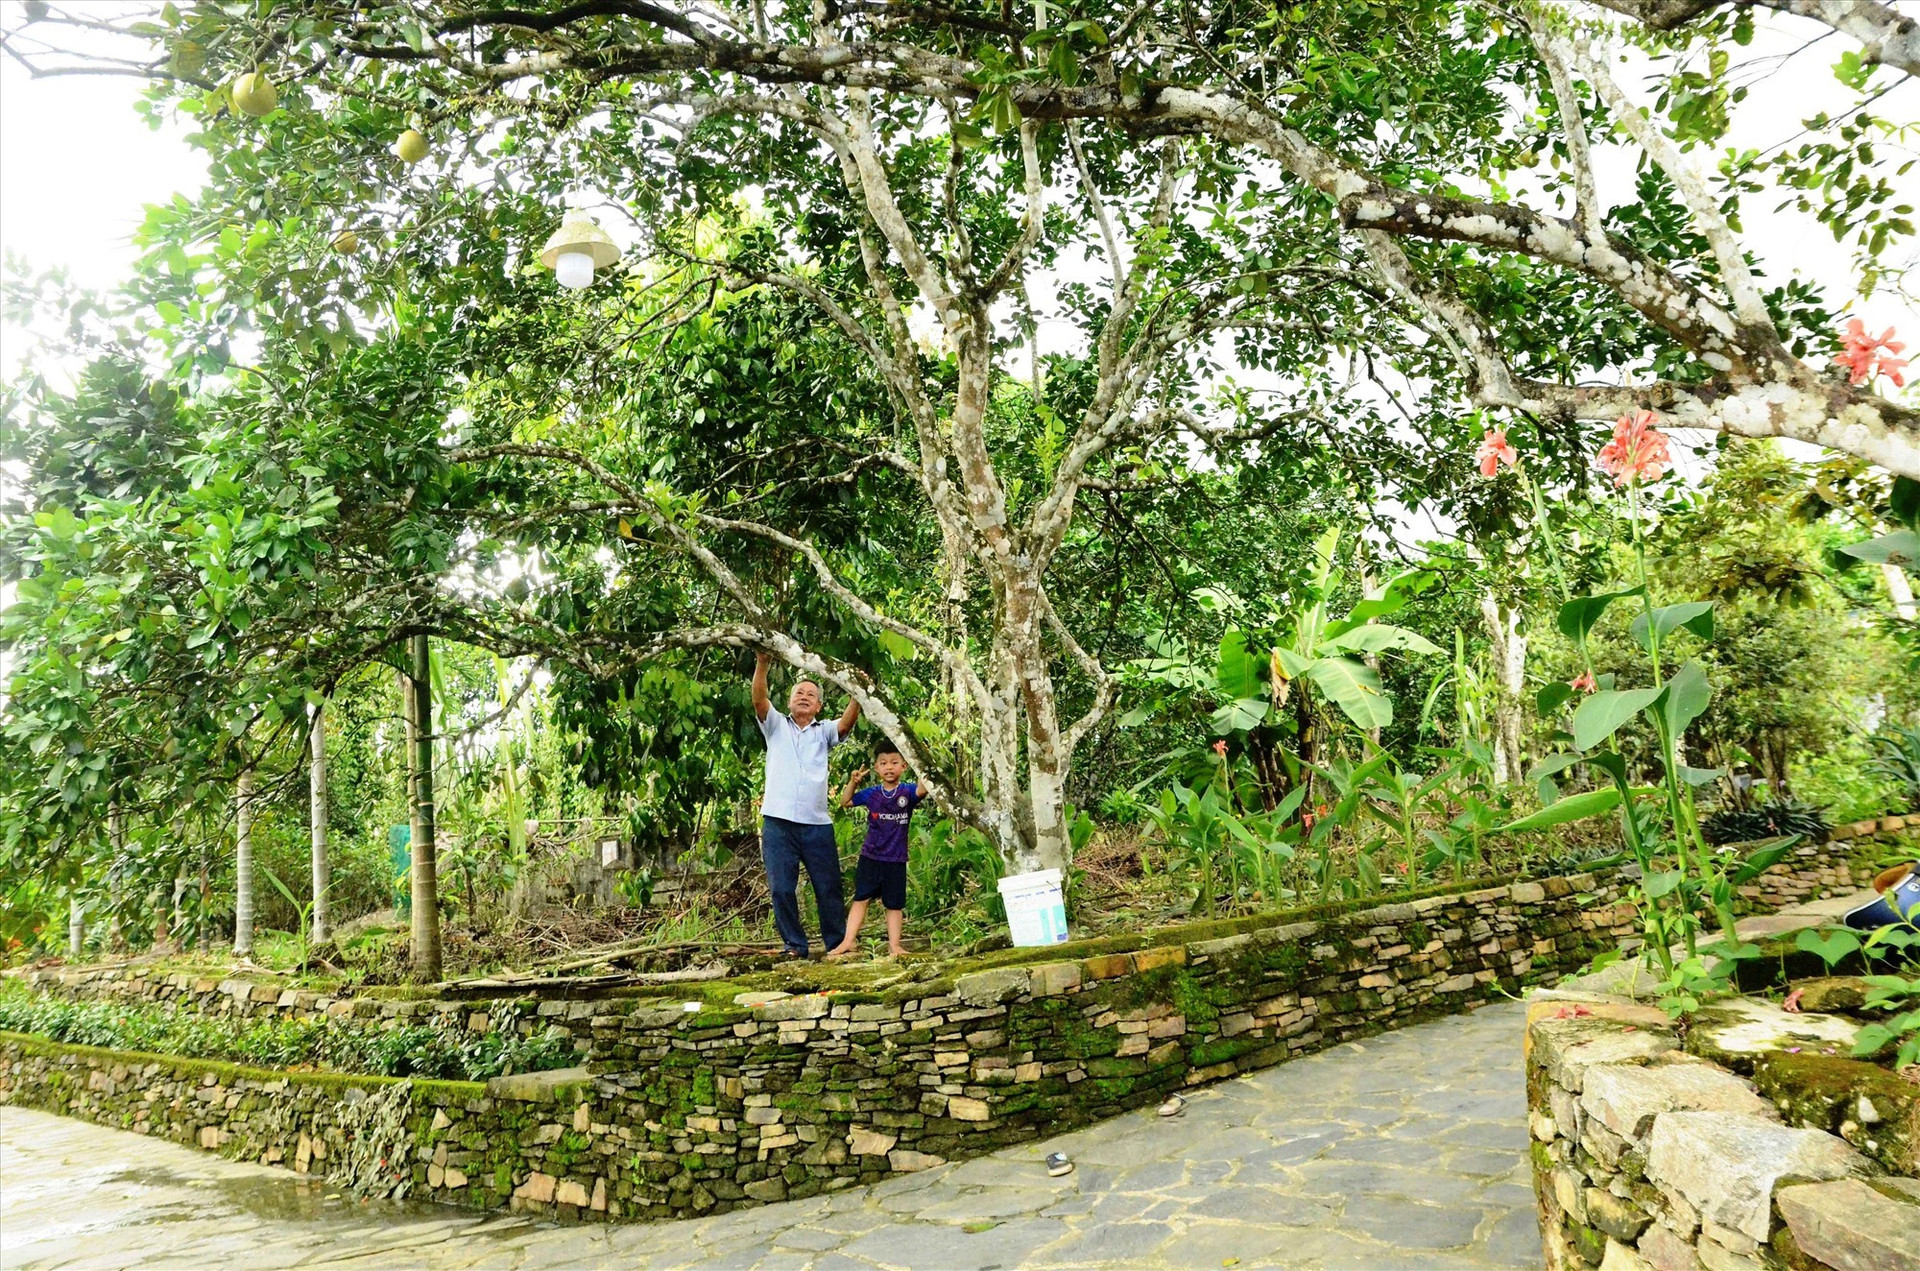 Loc Yen villagers beautify their gardens.